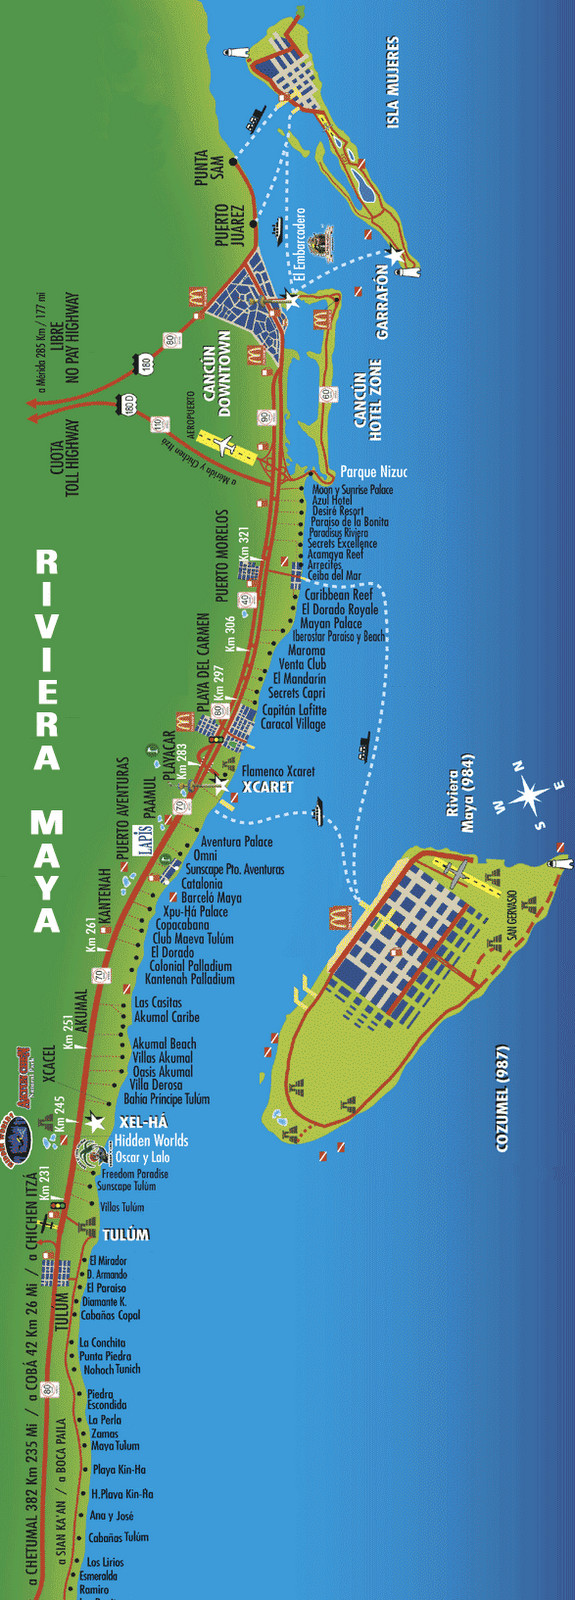 Map of Riviera Maya Things to do in Riviera Maya